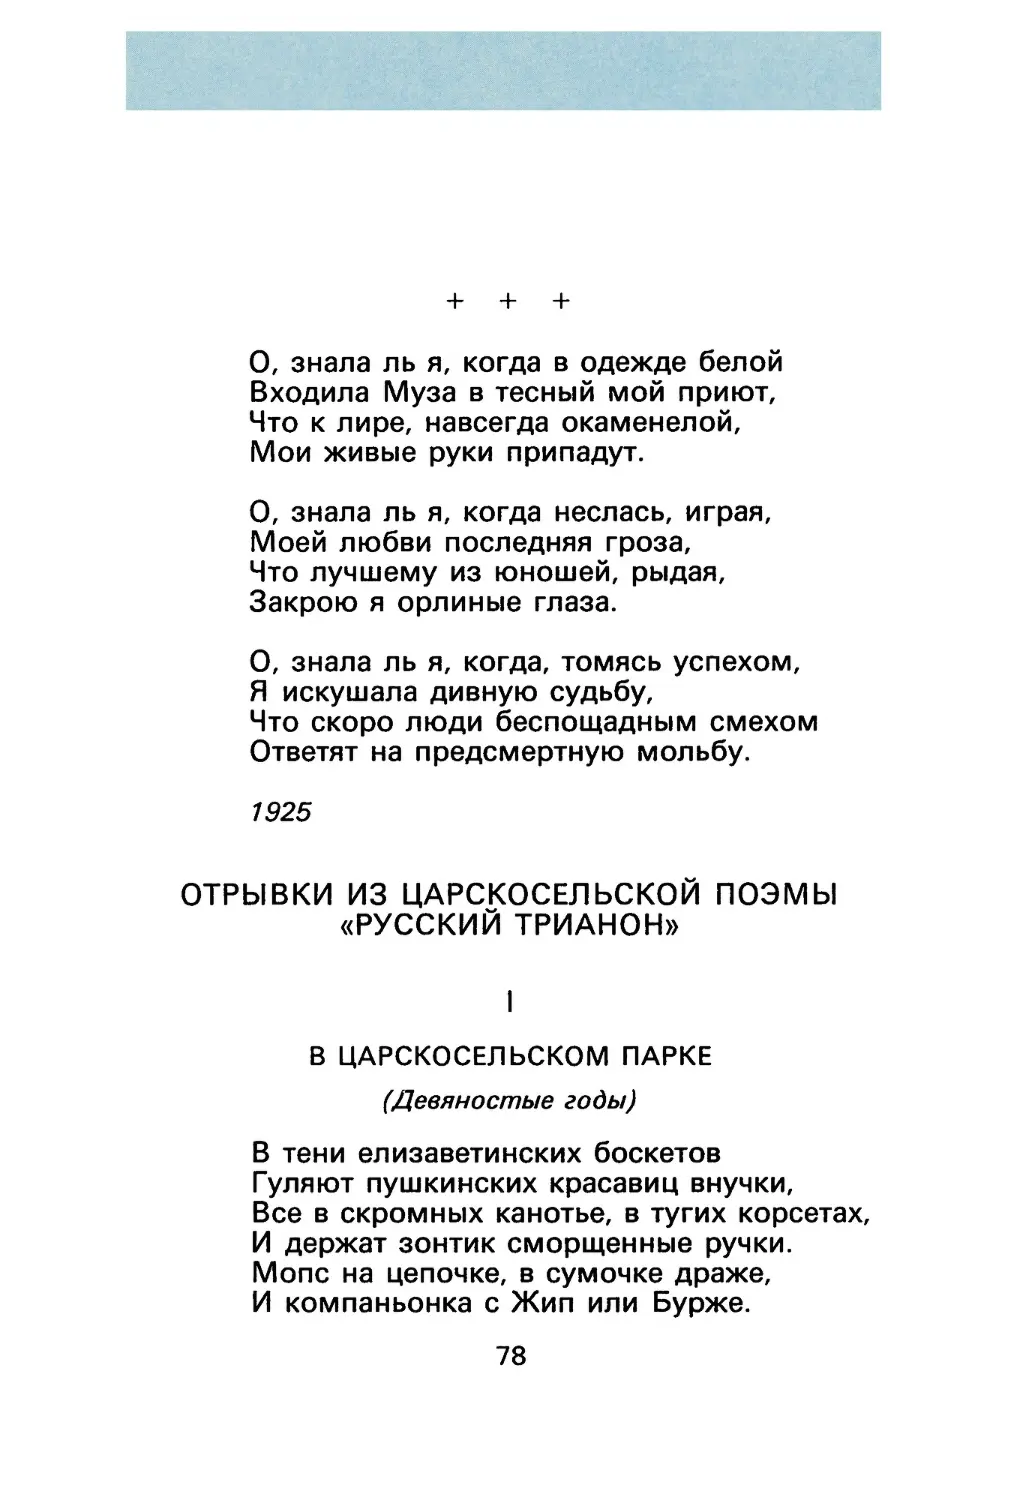 Анна Ахматова
Отрывки из царскосельской поэмы «Русский Трианон»